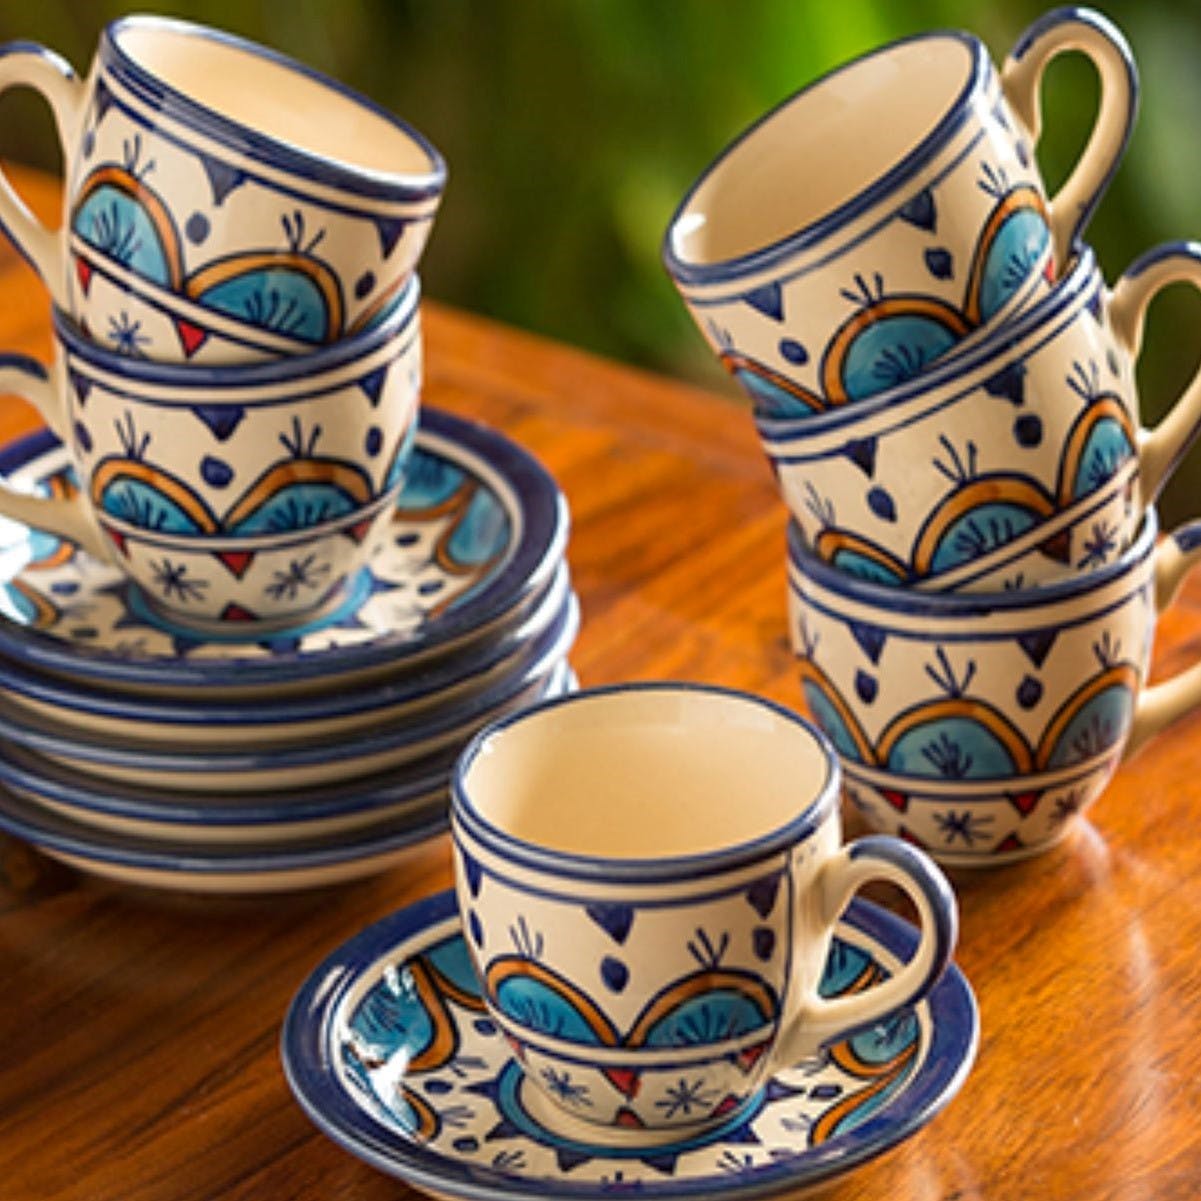 Cup,Cup,Coffee cup,Porcelain,Tableware,Dishware,Teacup,Serveware,Ceramic,Drinkware